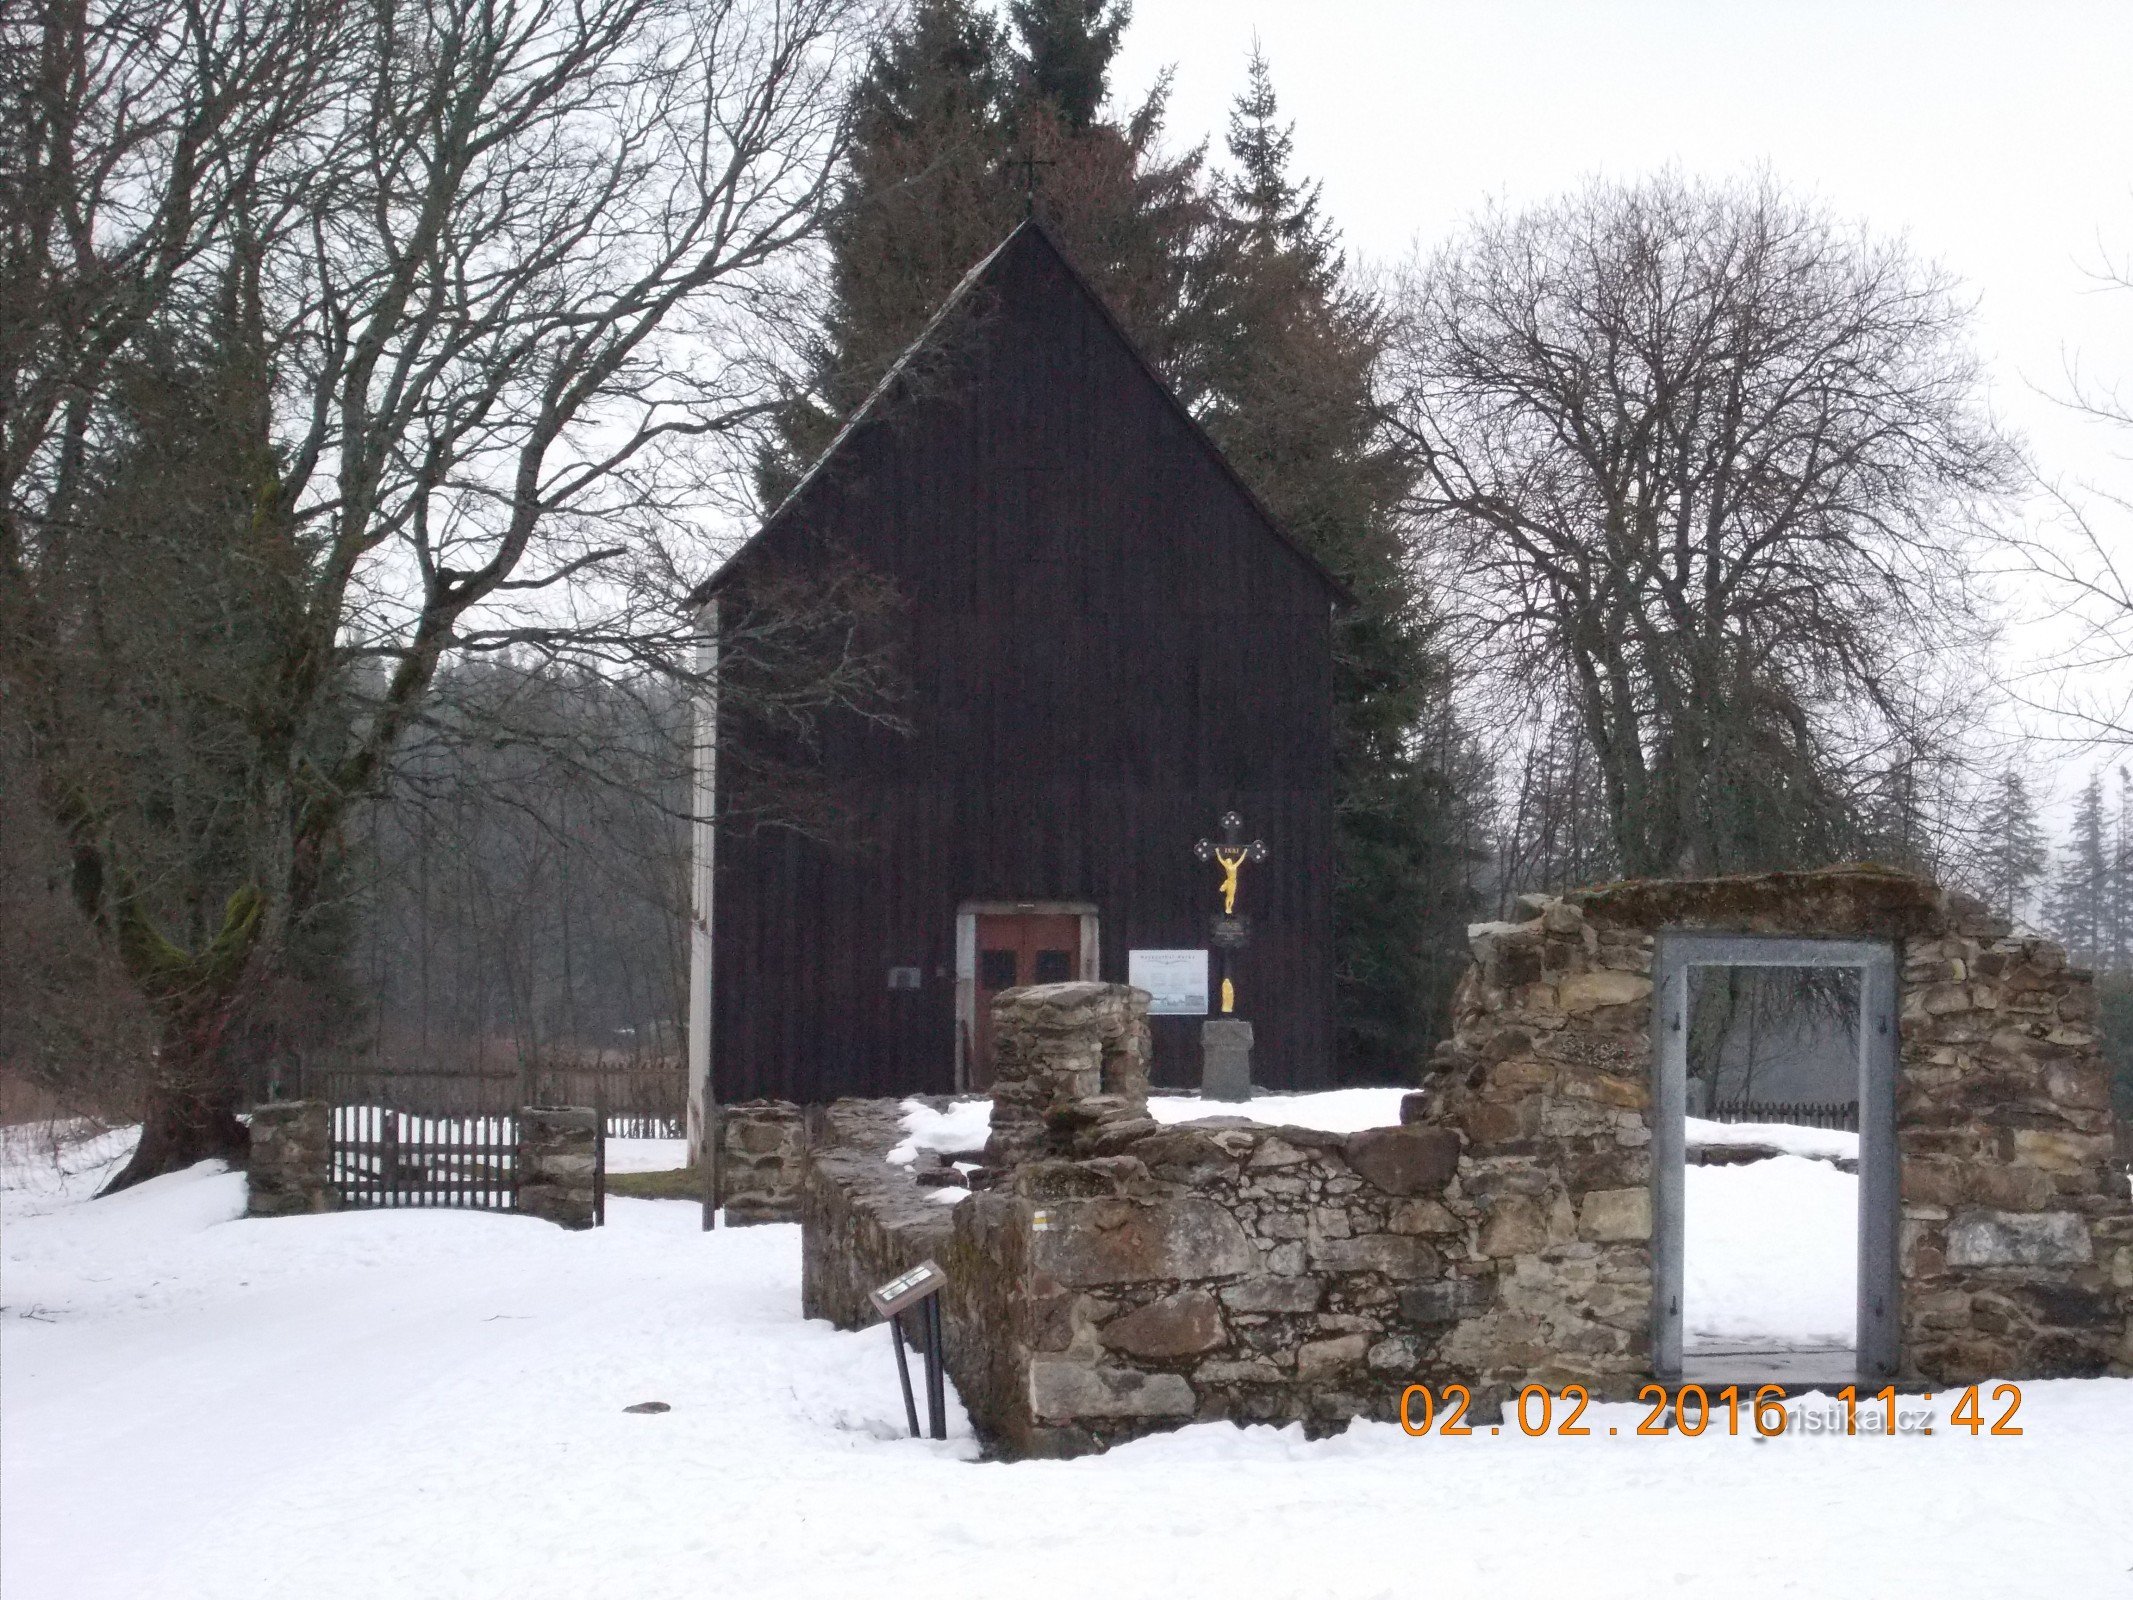 temetői kápolna Szent. Keresztek Hůrka faluban